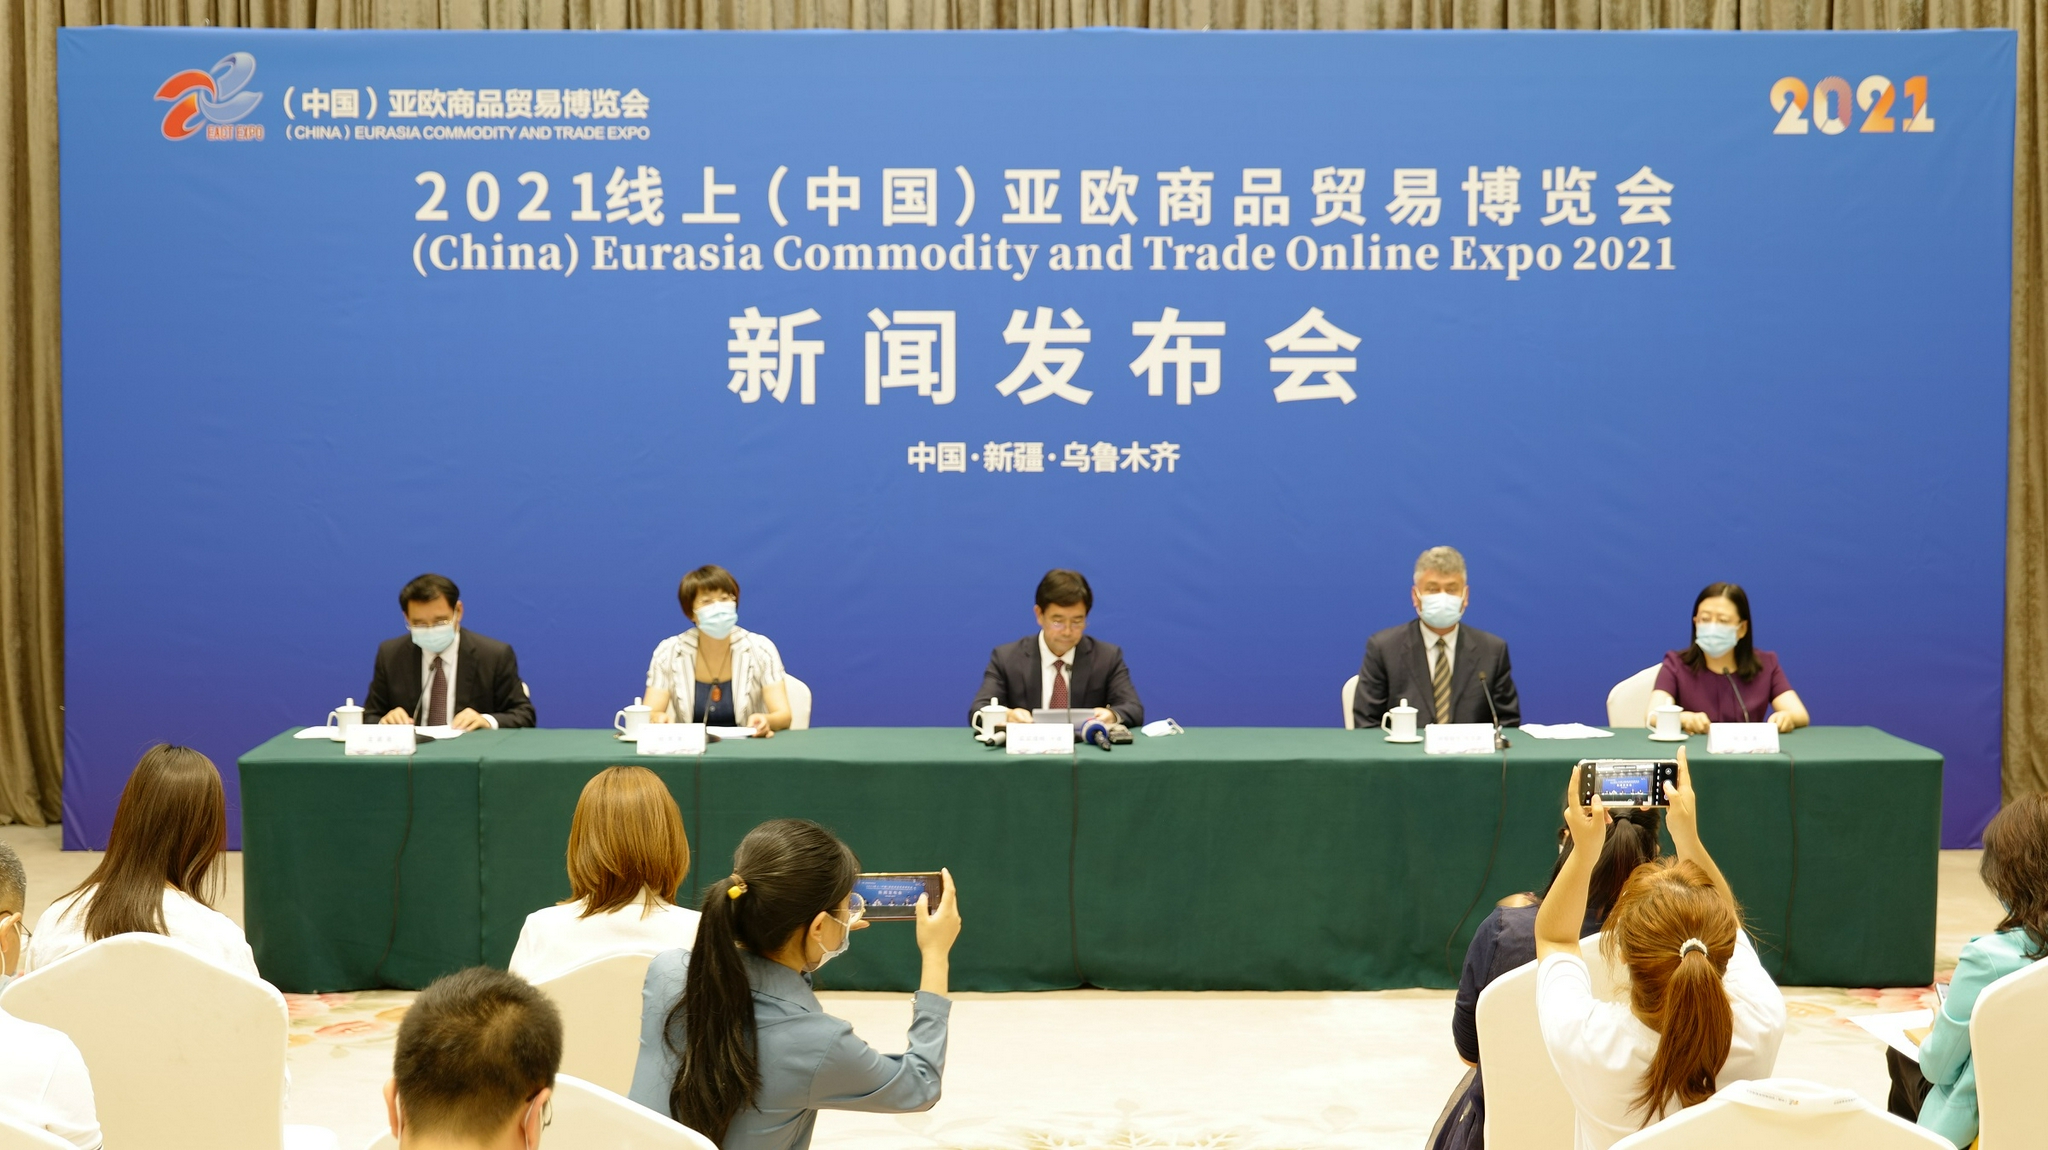 2021线上（中国）亚欧商品贸易博览会即将开幕 设置4大展区9个题材